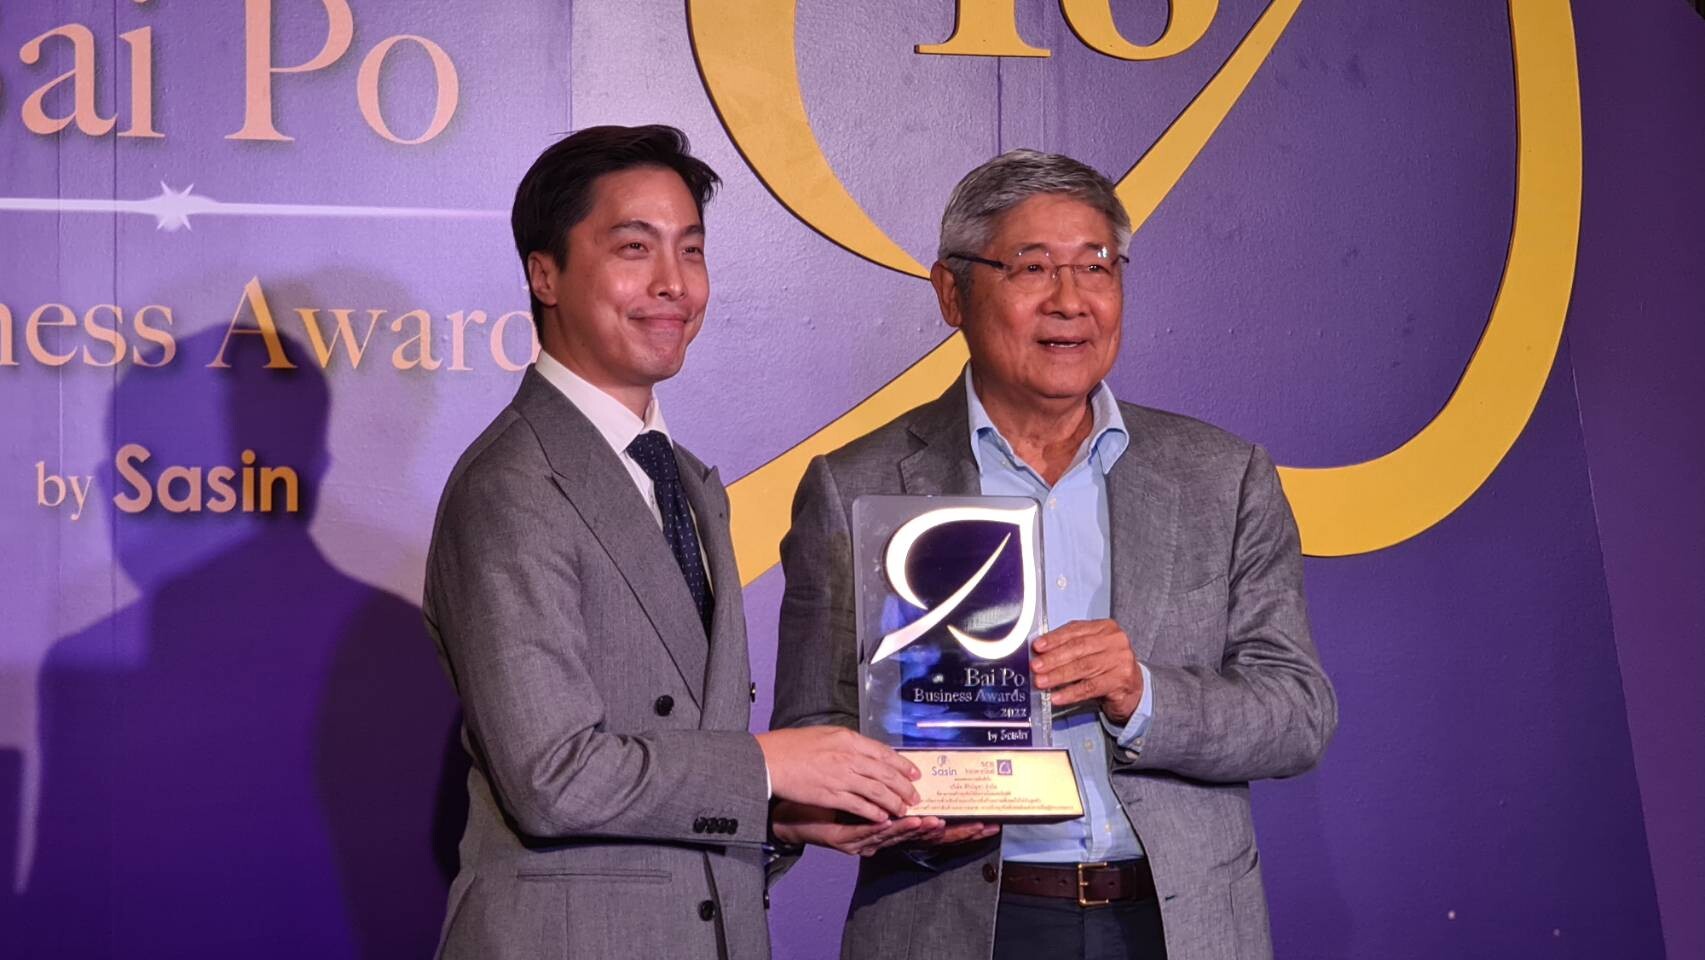 ศิริบัญชา คว้ารางวัลเกียรติยศ "Bai Po Business Awards by Sasin ครั้งที่ 18"